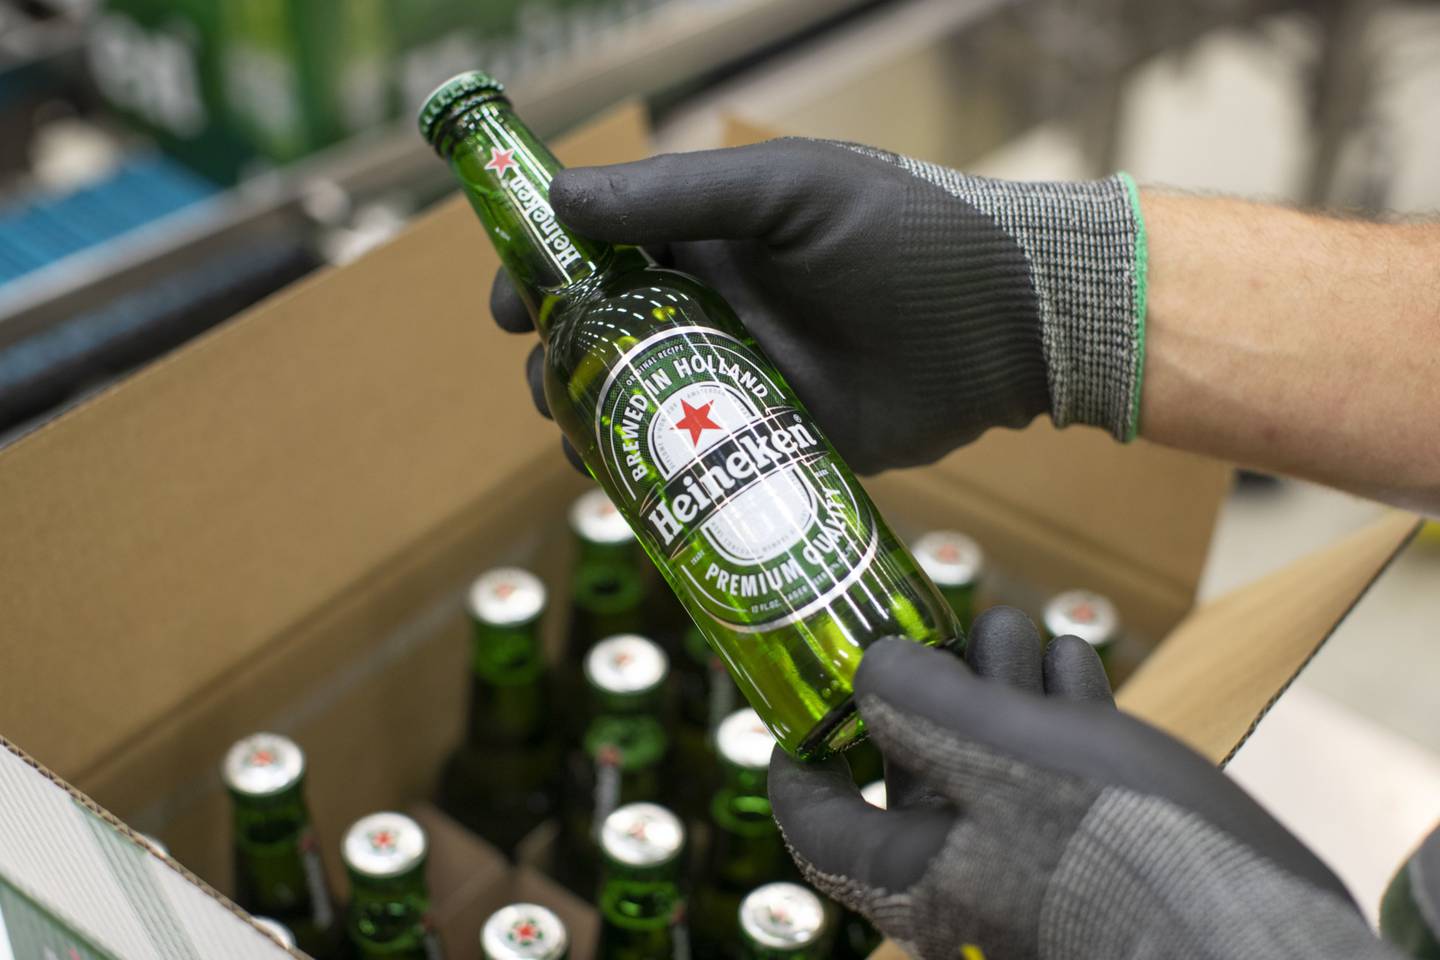 FEMSA es un importante accionista de Heineken, con una participación de alrededor de 14,76% en la compañía, de acuerdo con su portal.